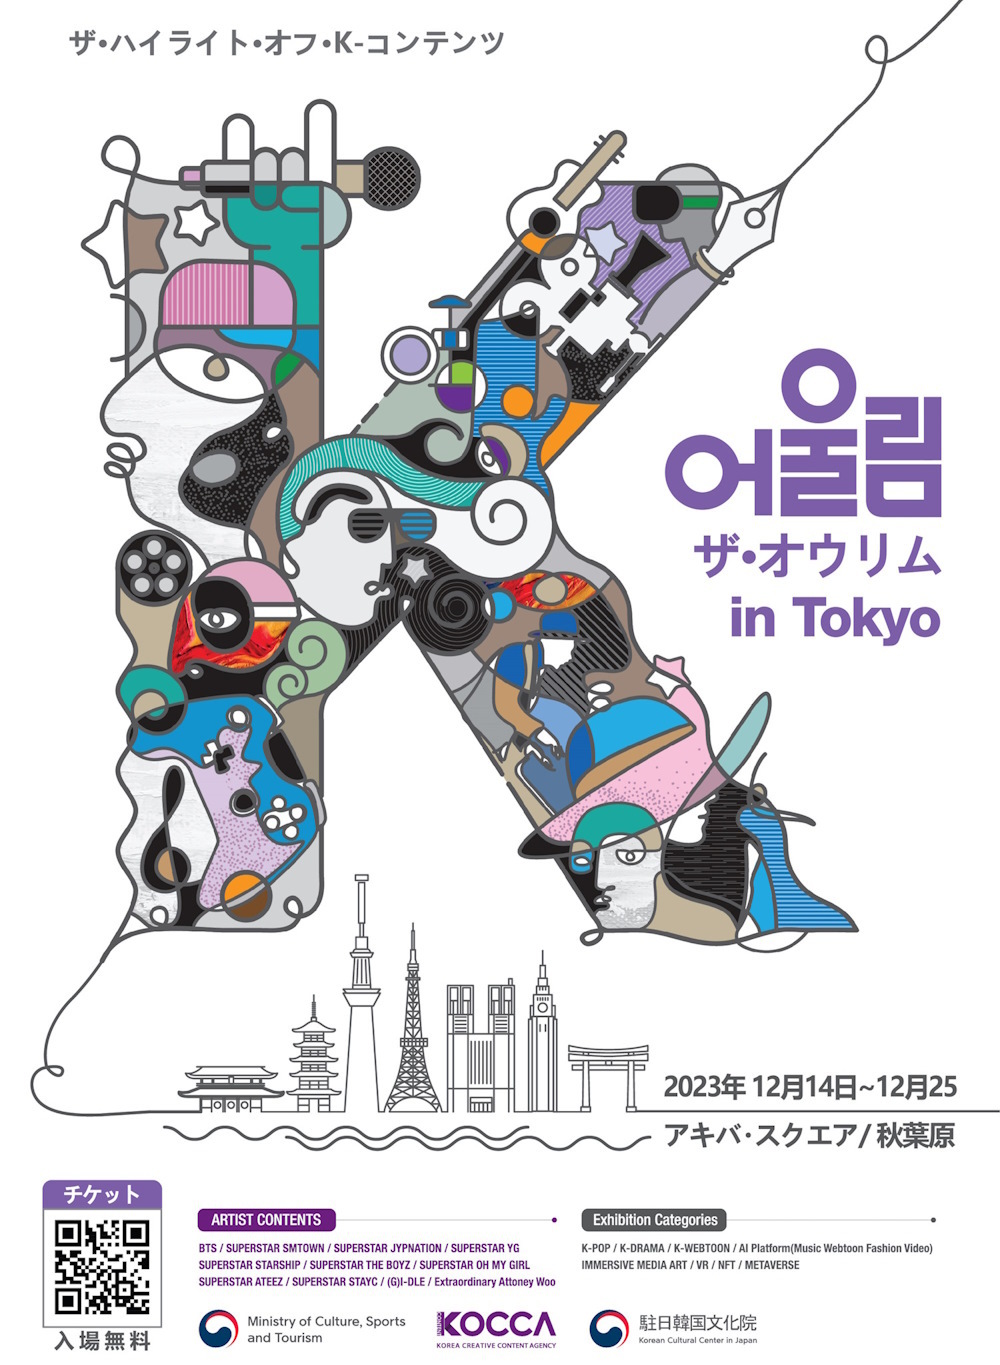 新技術融合コンテンツ、日韓文化交流の架け橋となると期待韓国コンテンツ振興院、「The Oulim (調和) in Tokyo」が今月の１４日に開催